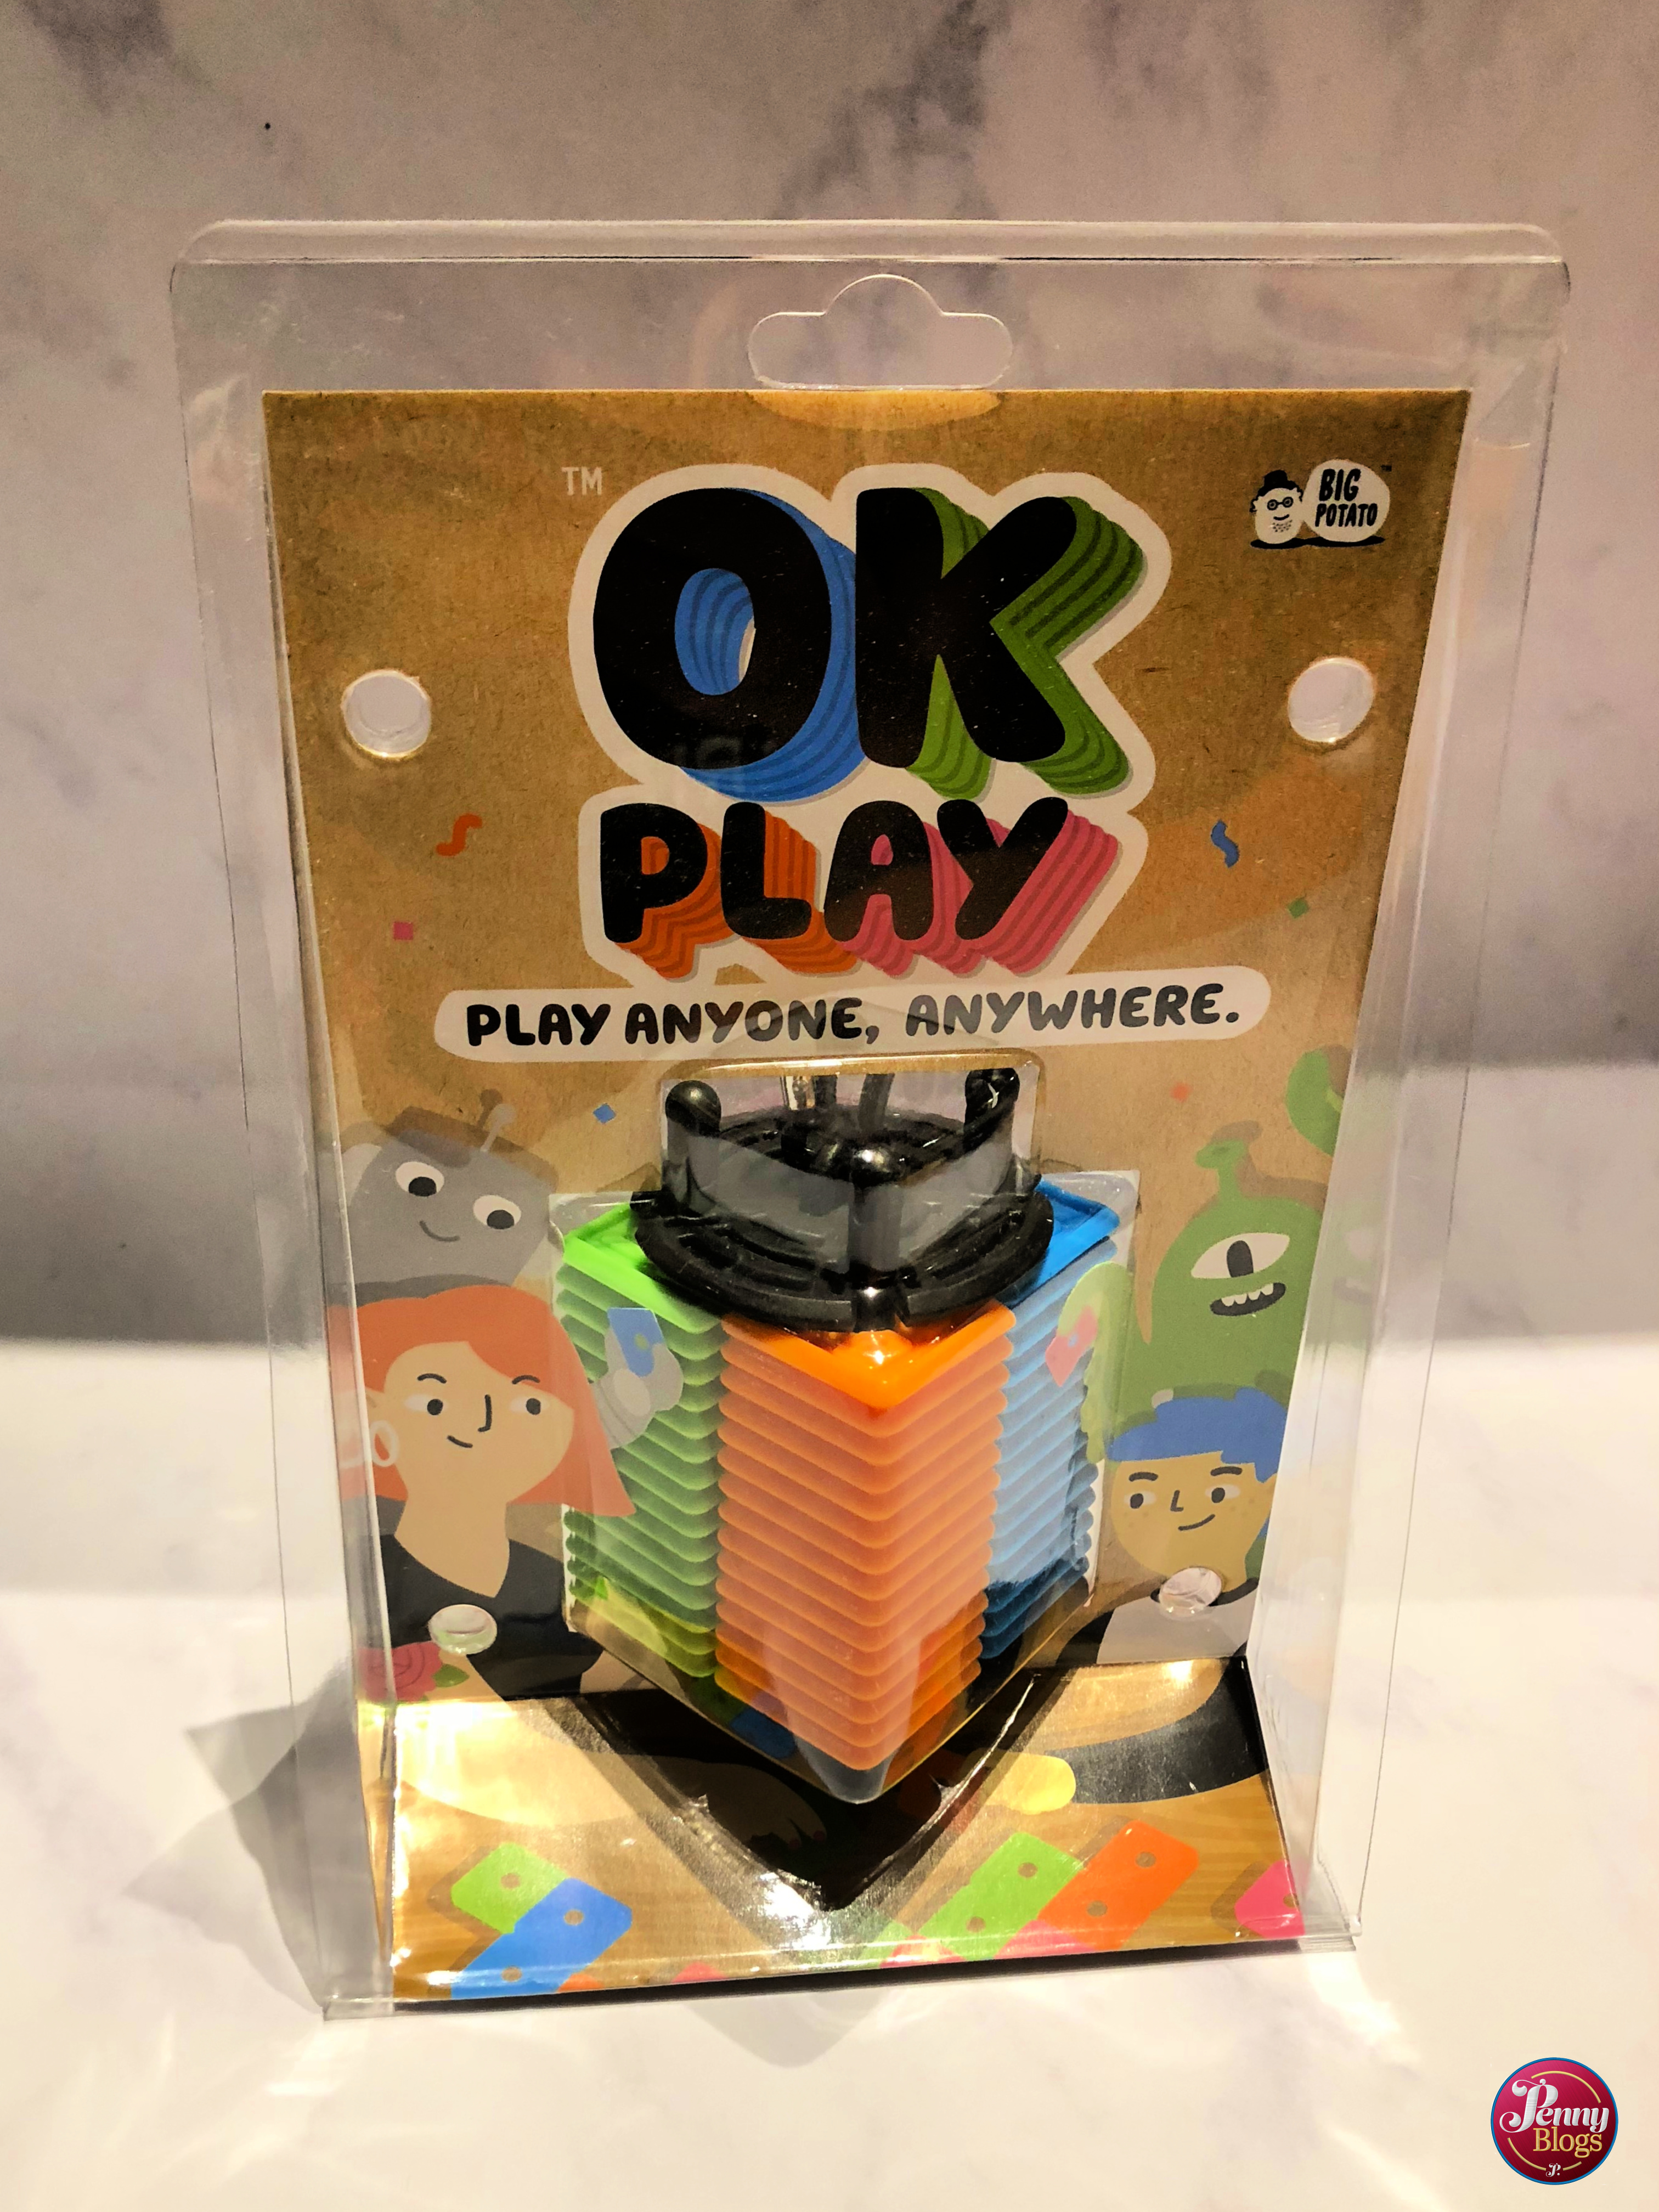  Big Potato OK Play: Strategy Tile Game for Kids and